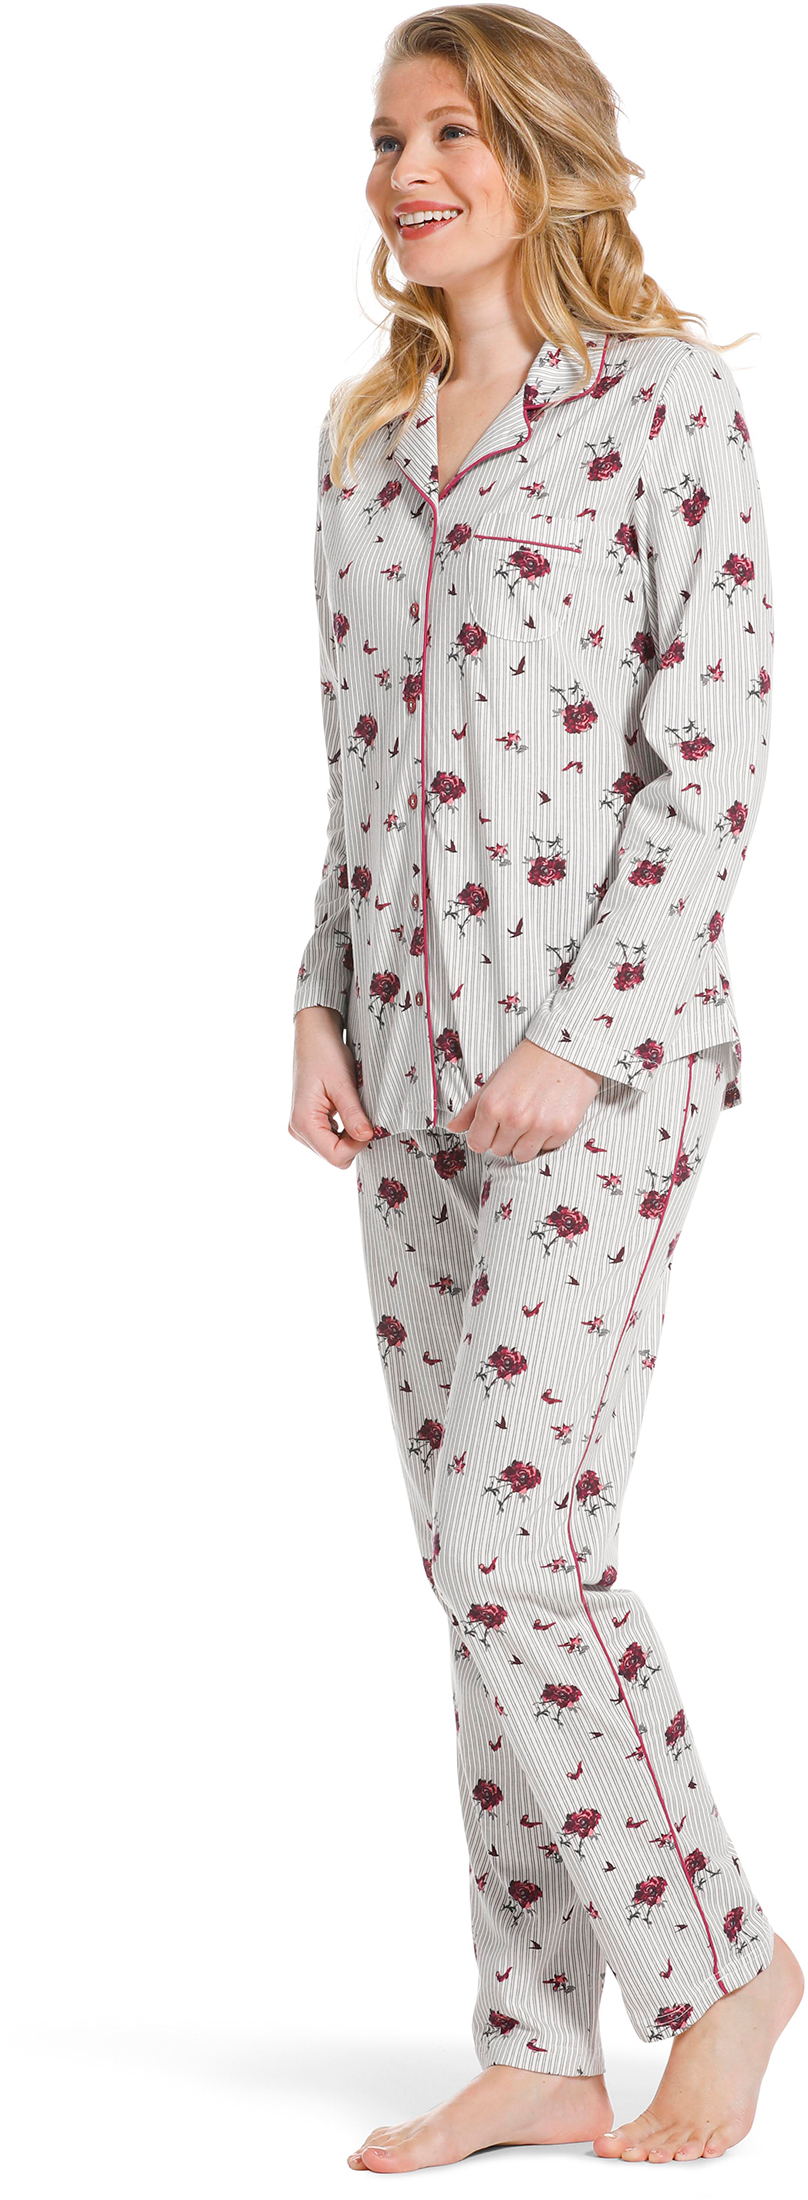 Pastunette doorknoop dames pyjama 20222-156-6 - Grijs - 46